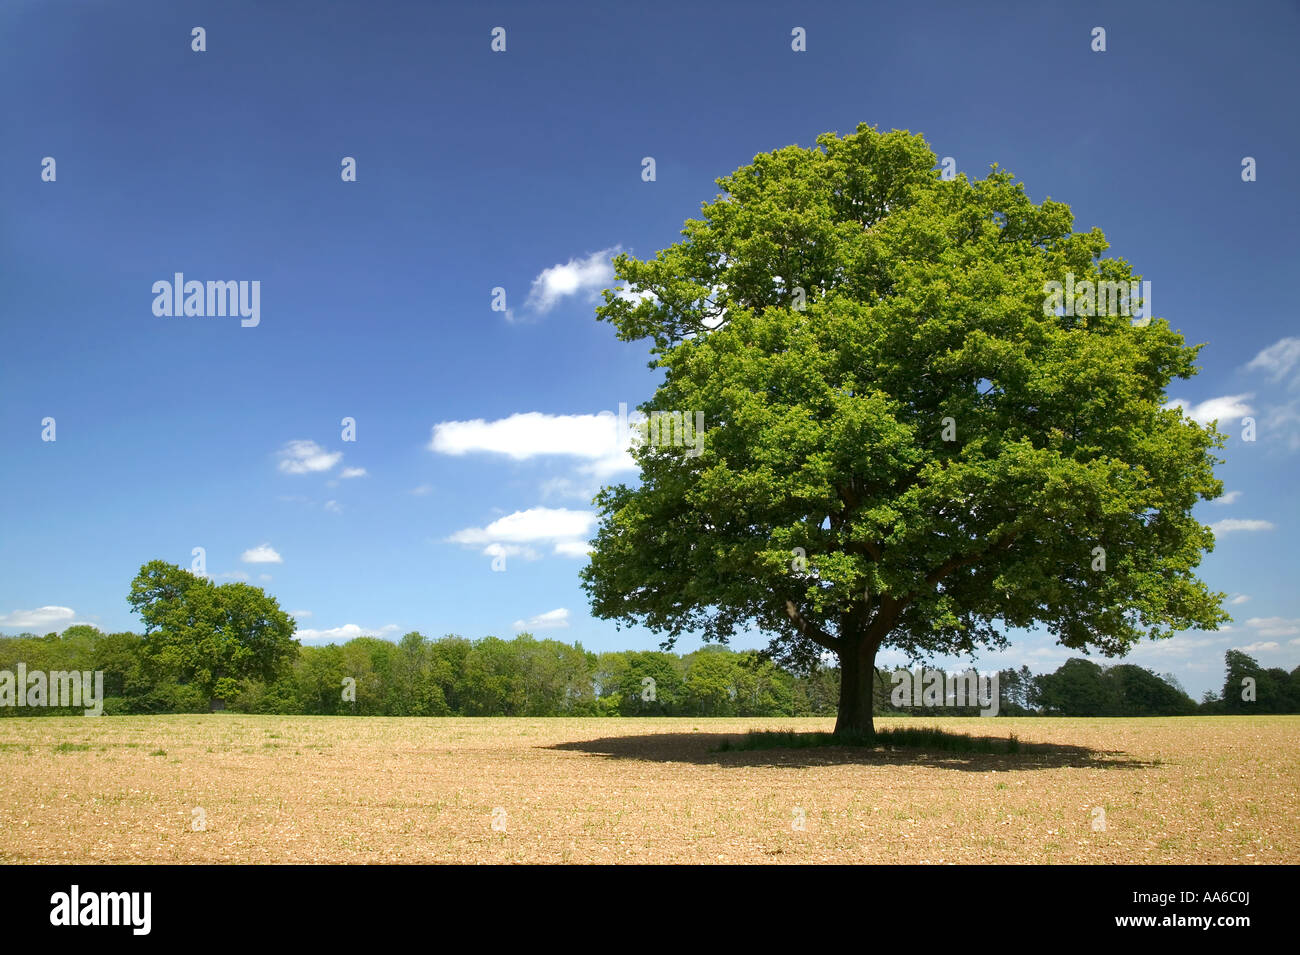 Chêne arbre dans un champ sur une journée ensoleillée, prises dans un champ dans le Hampshire, en Angleterre. Banque D'Images